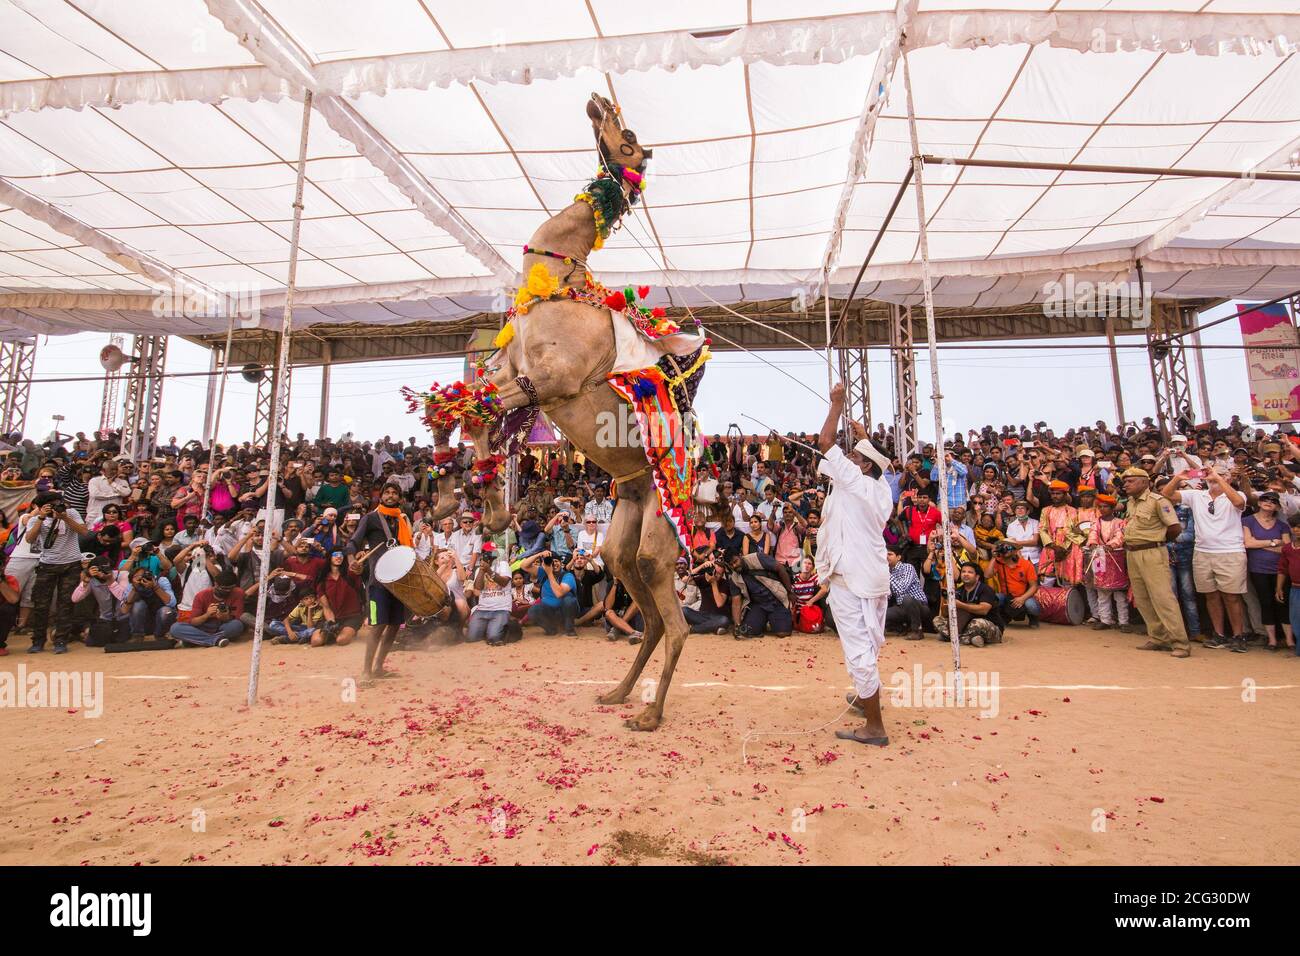 dancing camel at pushkar camel fair Stock Photo